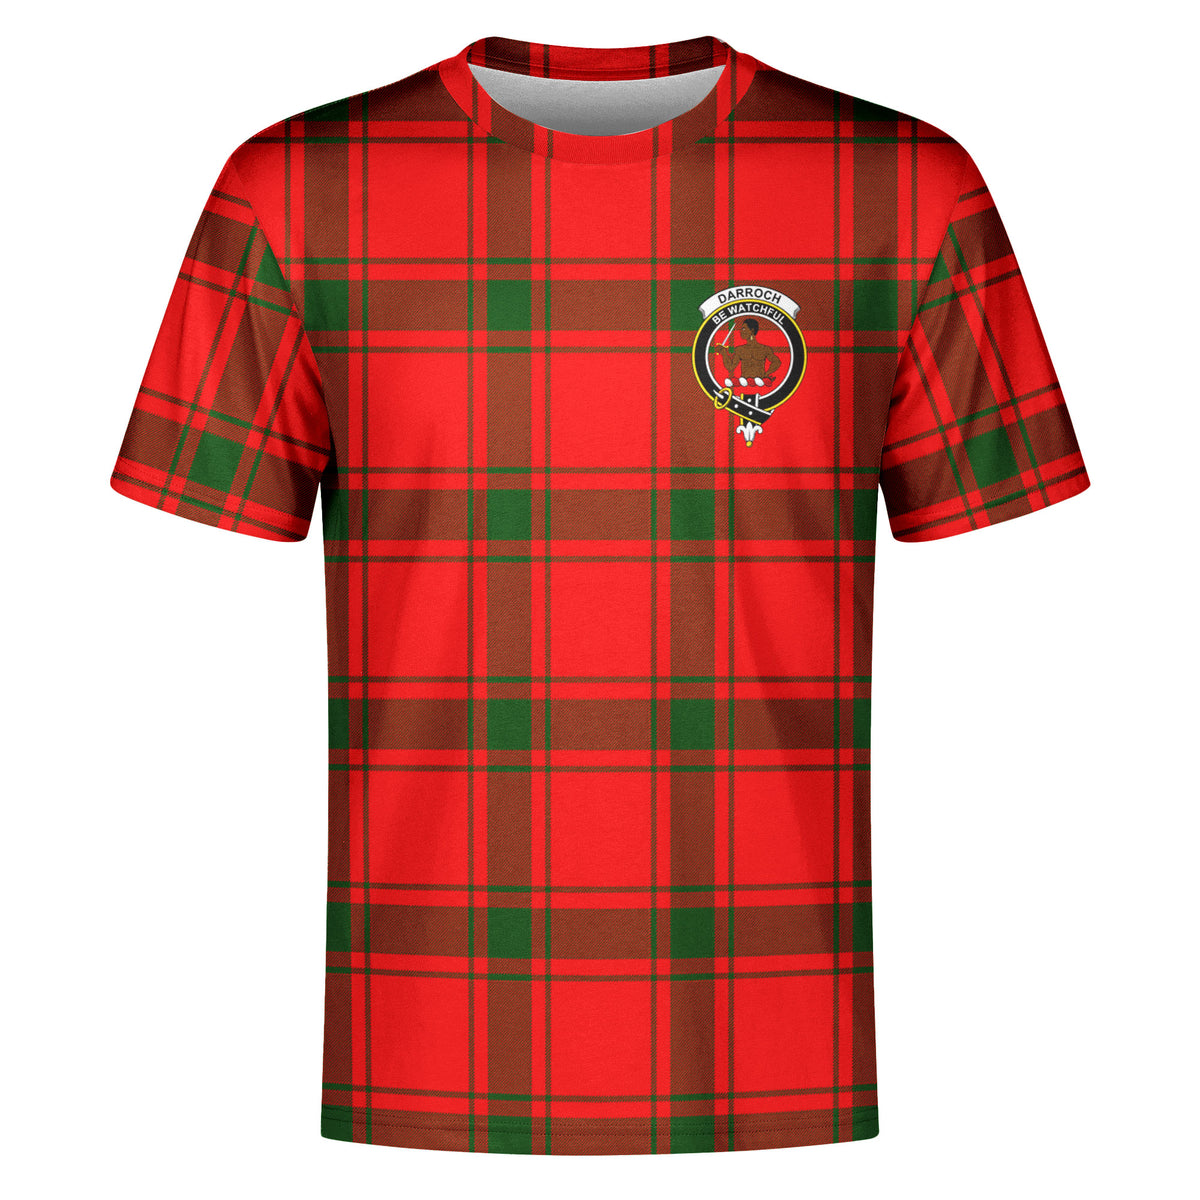 Darroch (Gourock) Tartan Crest T-shirt